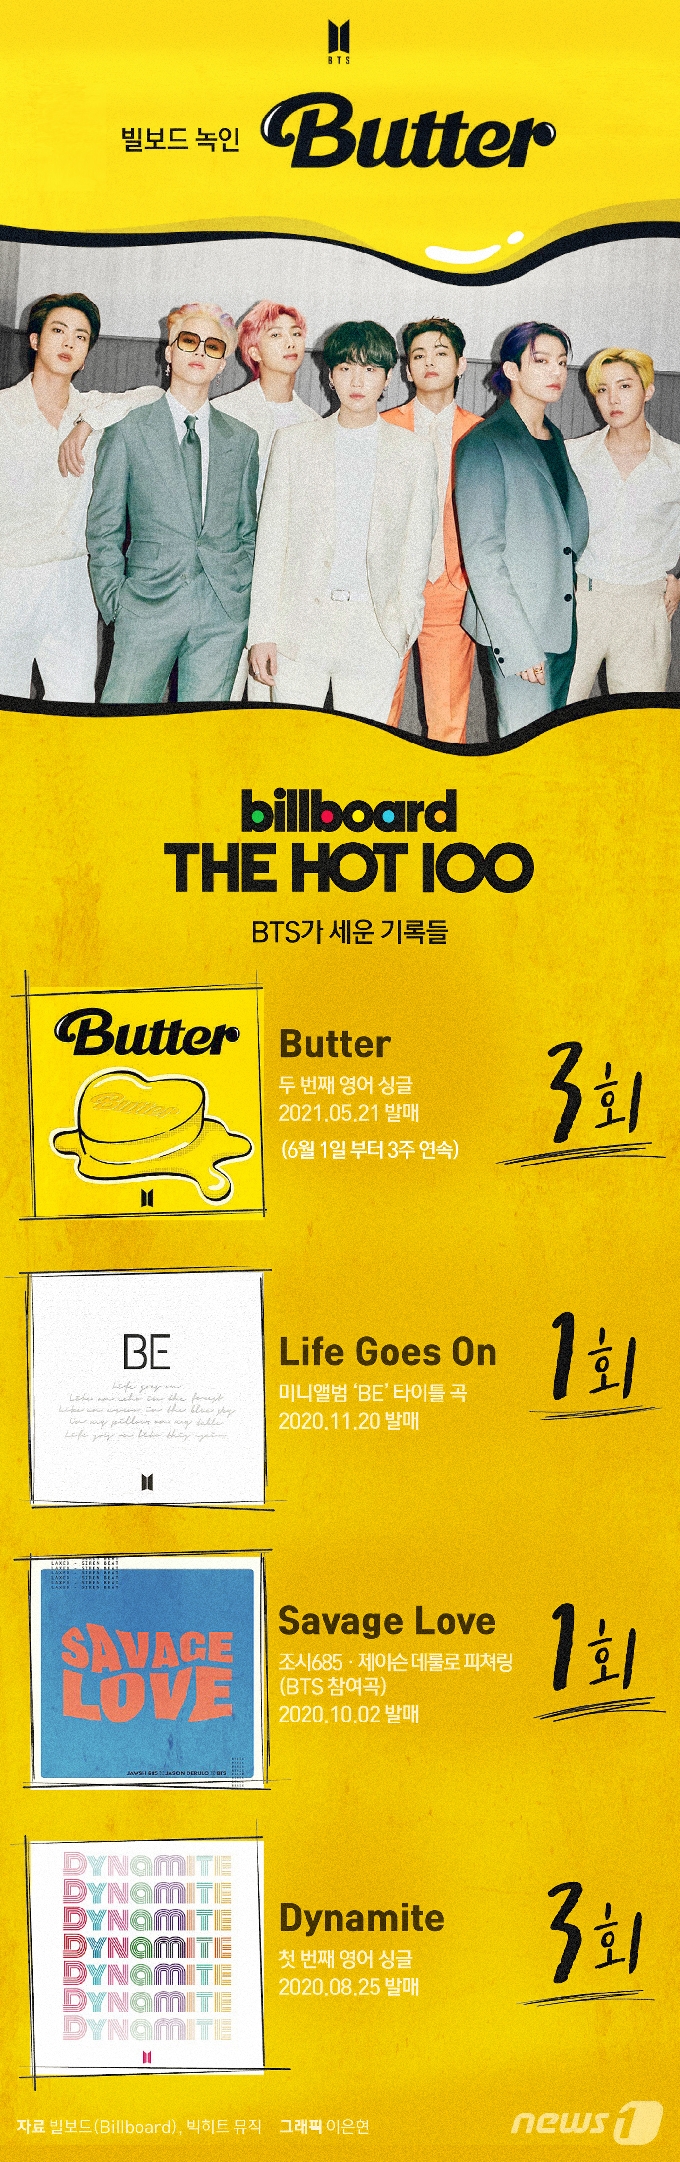 [사진] [그래픽뉴스] 빌보드 녹인 '버터' 3주 연속 1위…BTS가 세운 기록들